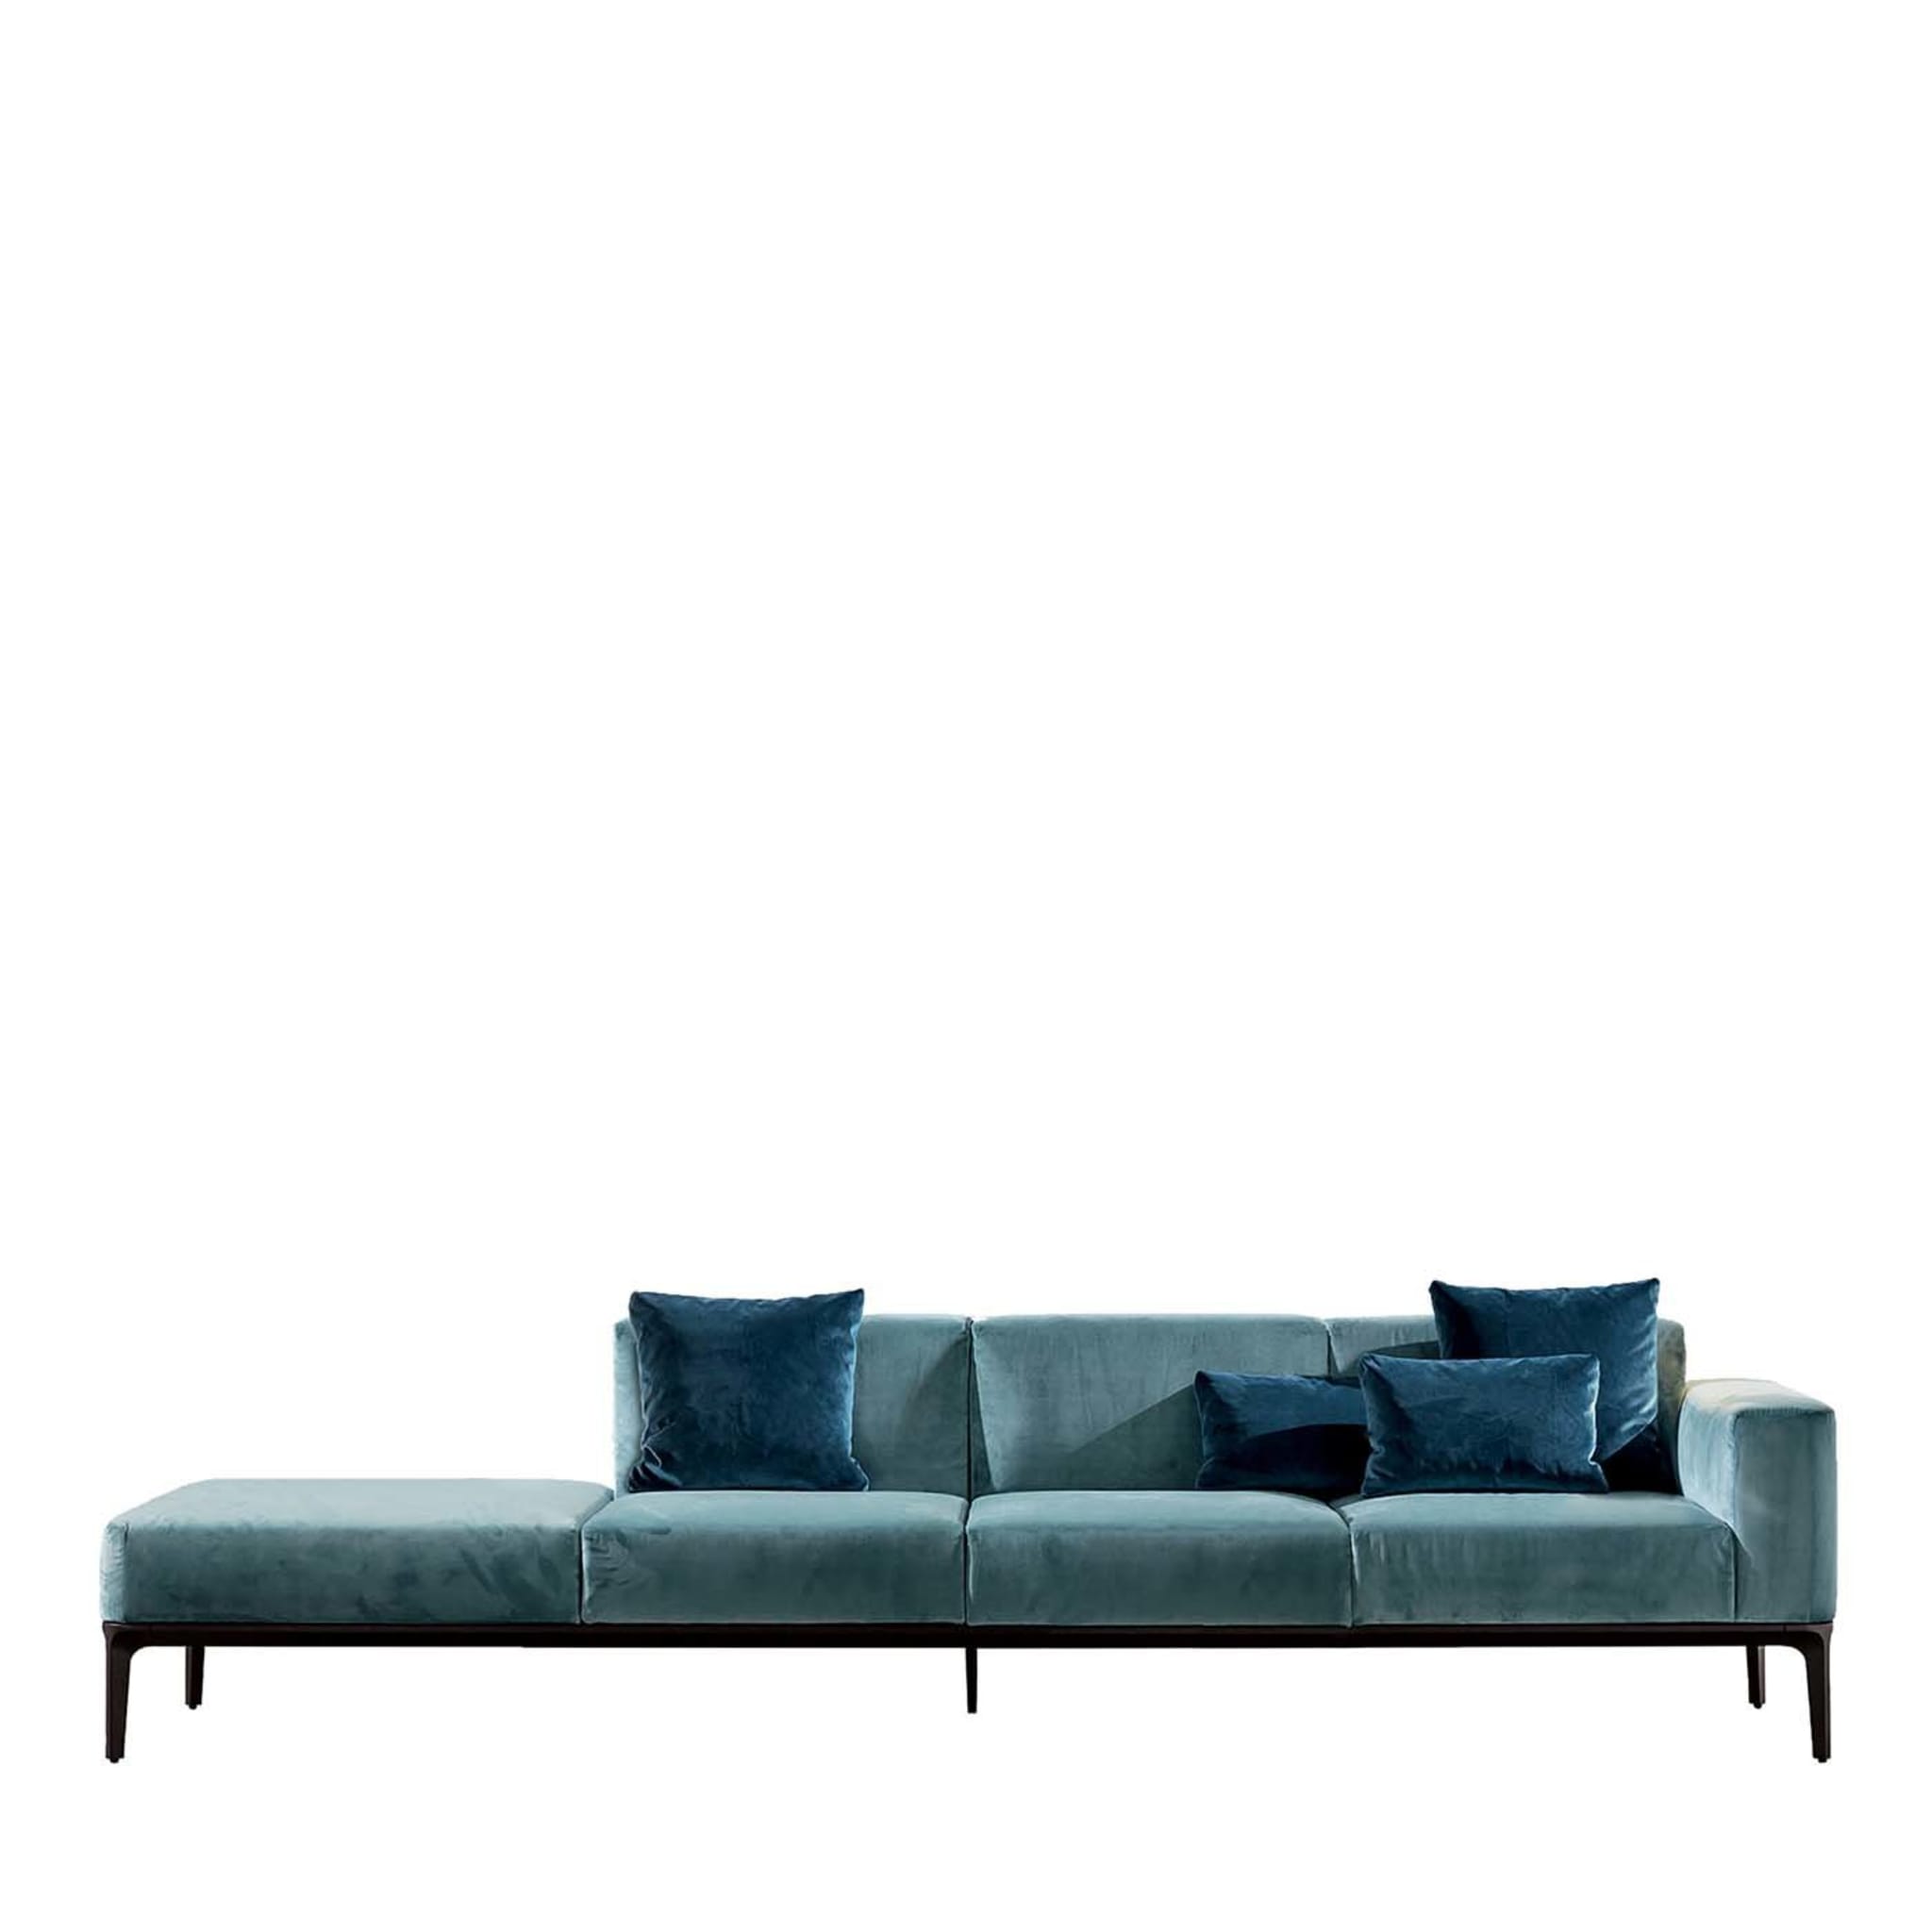 Slim 4-Seater Sofa in Light Blue Velvet - Main view